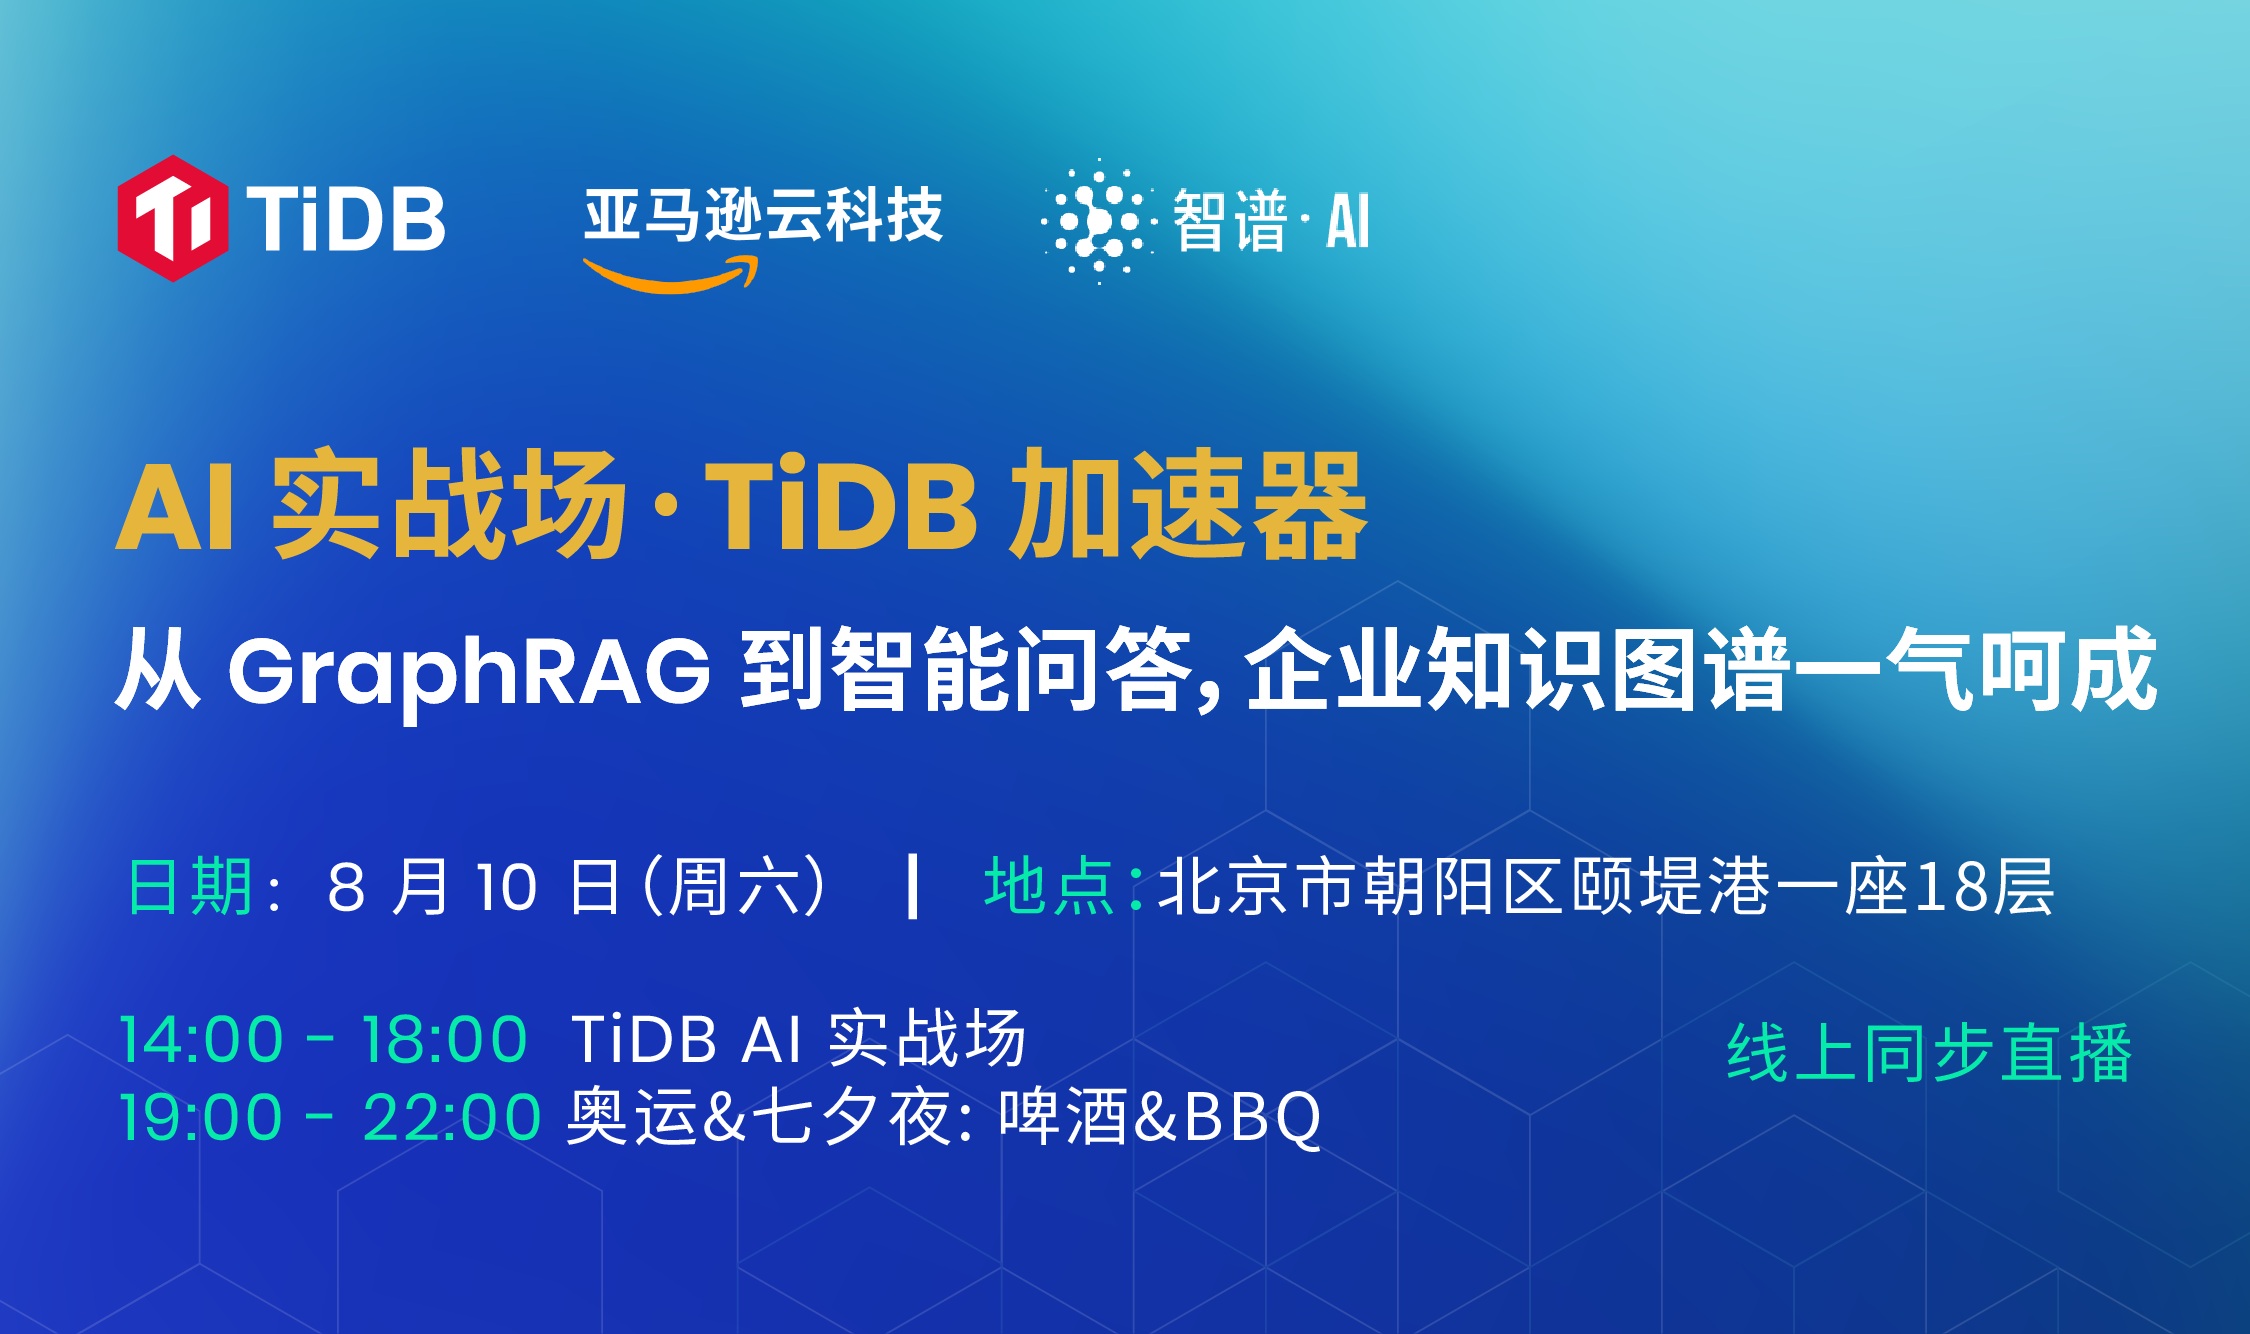 8 月 10 号 TiDB AI Workshop 实战北京站：一起探索 AI GraphRAG、智能问答、企业知识图谱的落地与实践！TiDB Hackathon 现场实战动手训练的机会来啦！